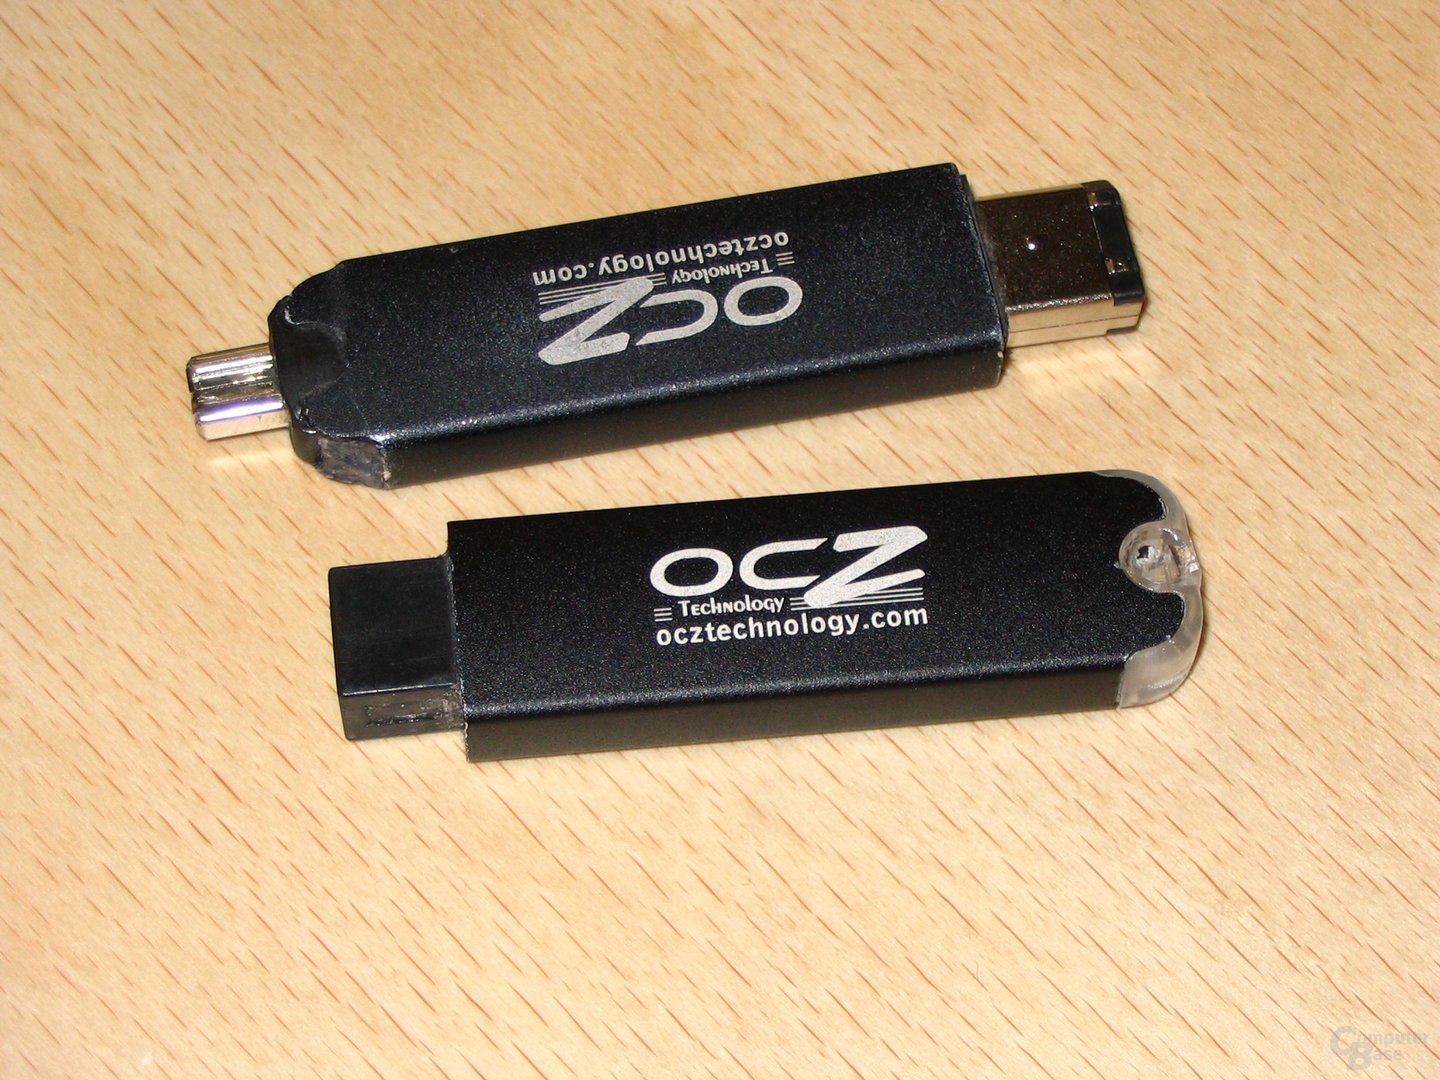 FireWire-Sticks von OCZ